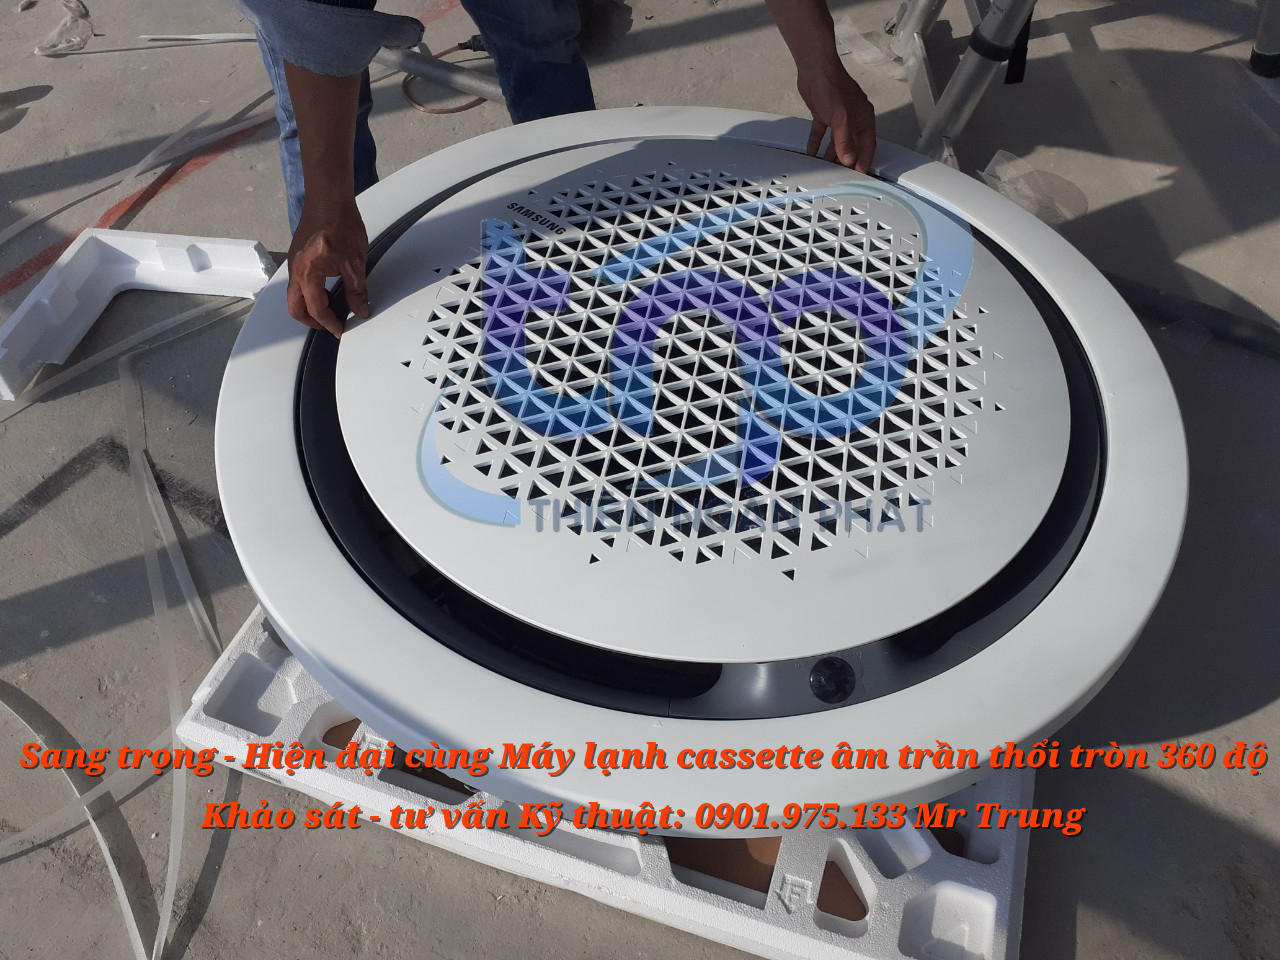 Máy lạnh âm trần thổi tròn 360 độ Samssung- LG thiết kế vô cùng sang trọng May-lanh-samsung-dang-thoi-tron-360-do